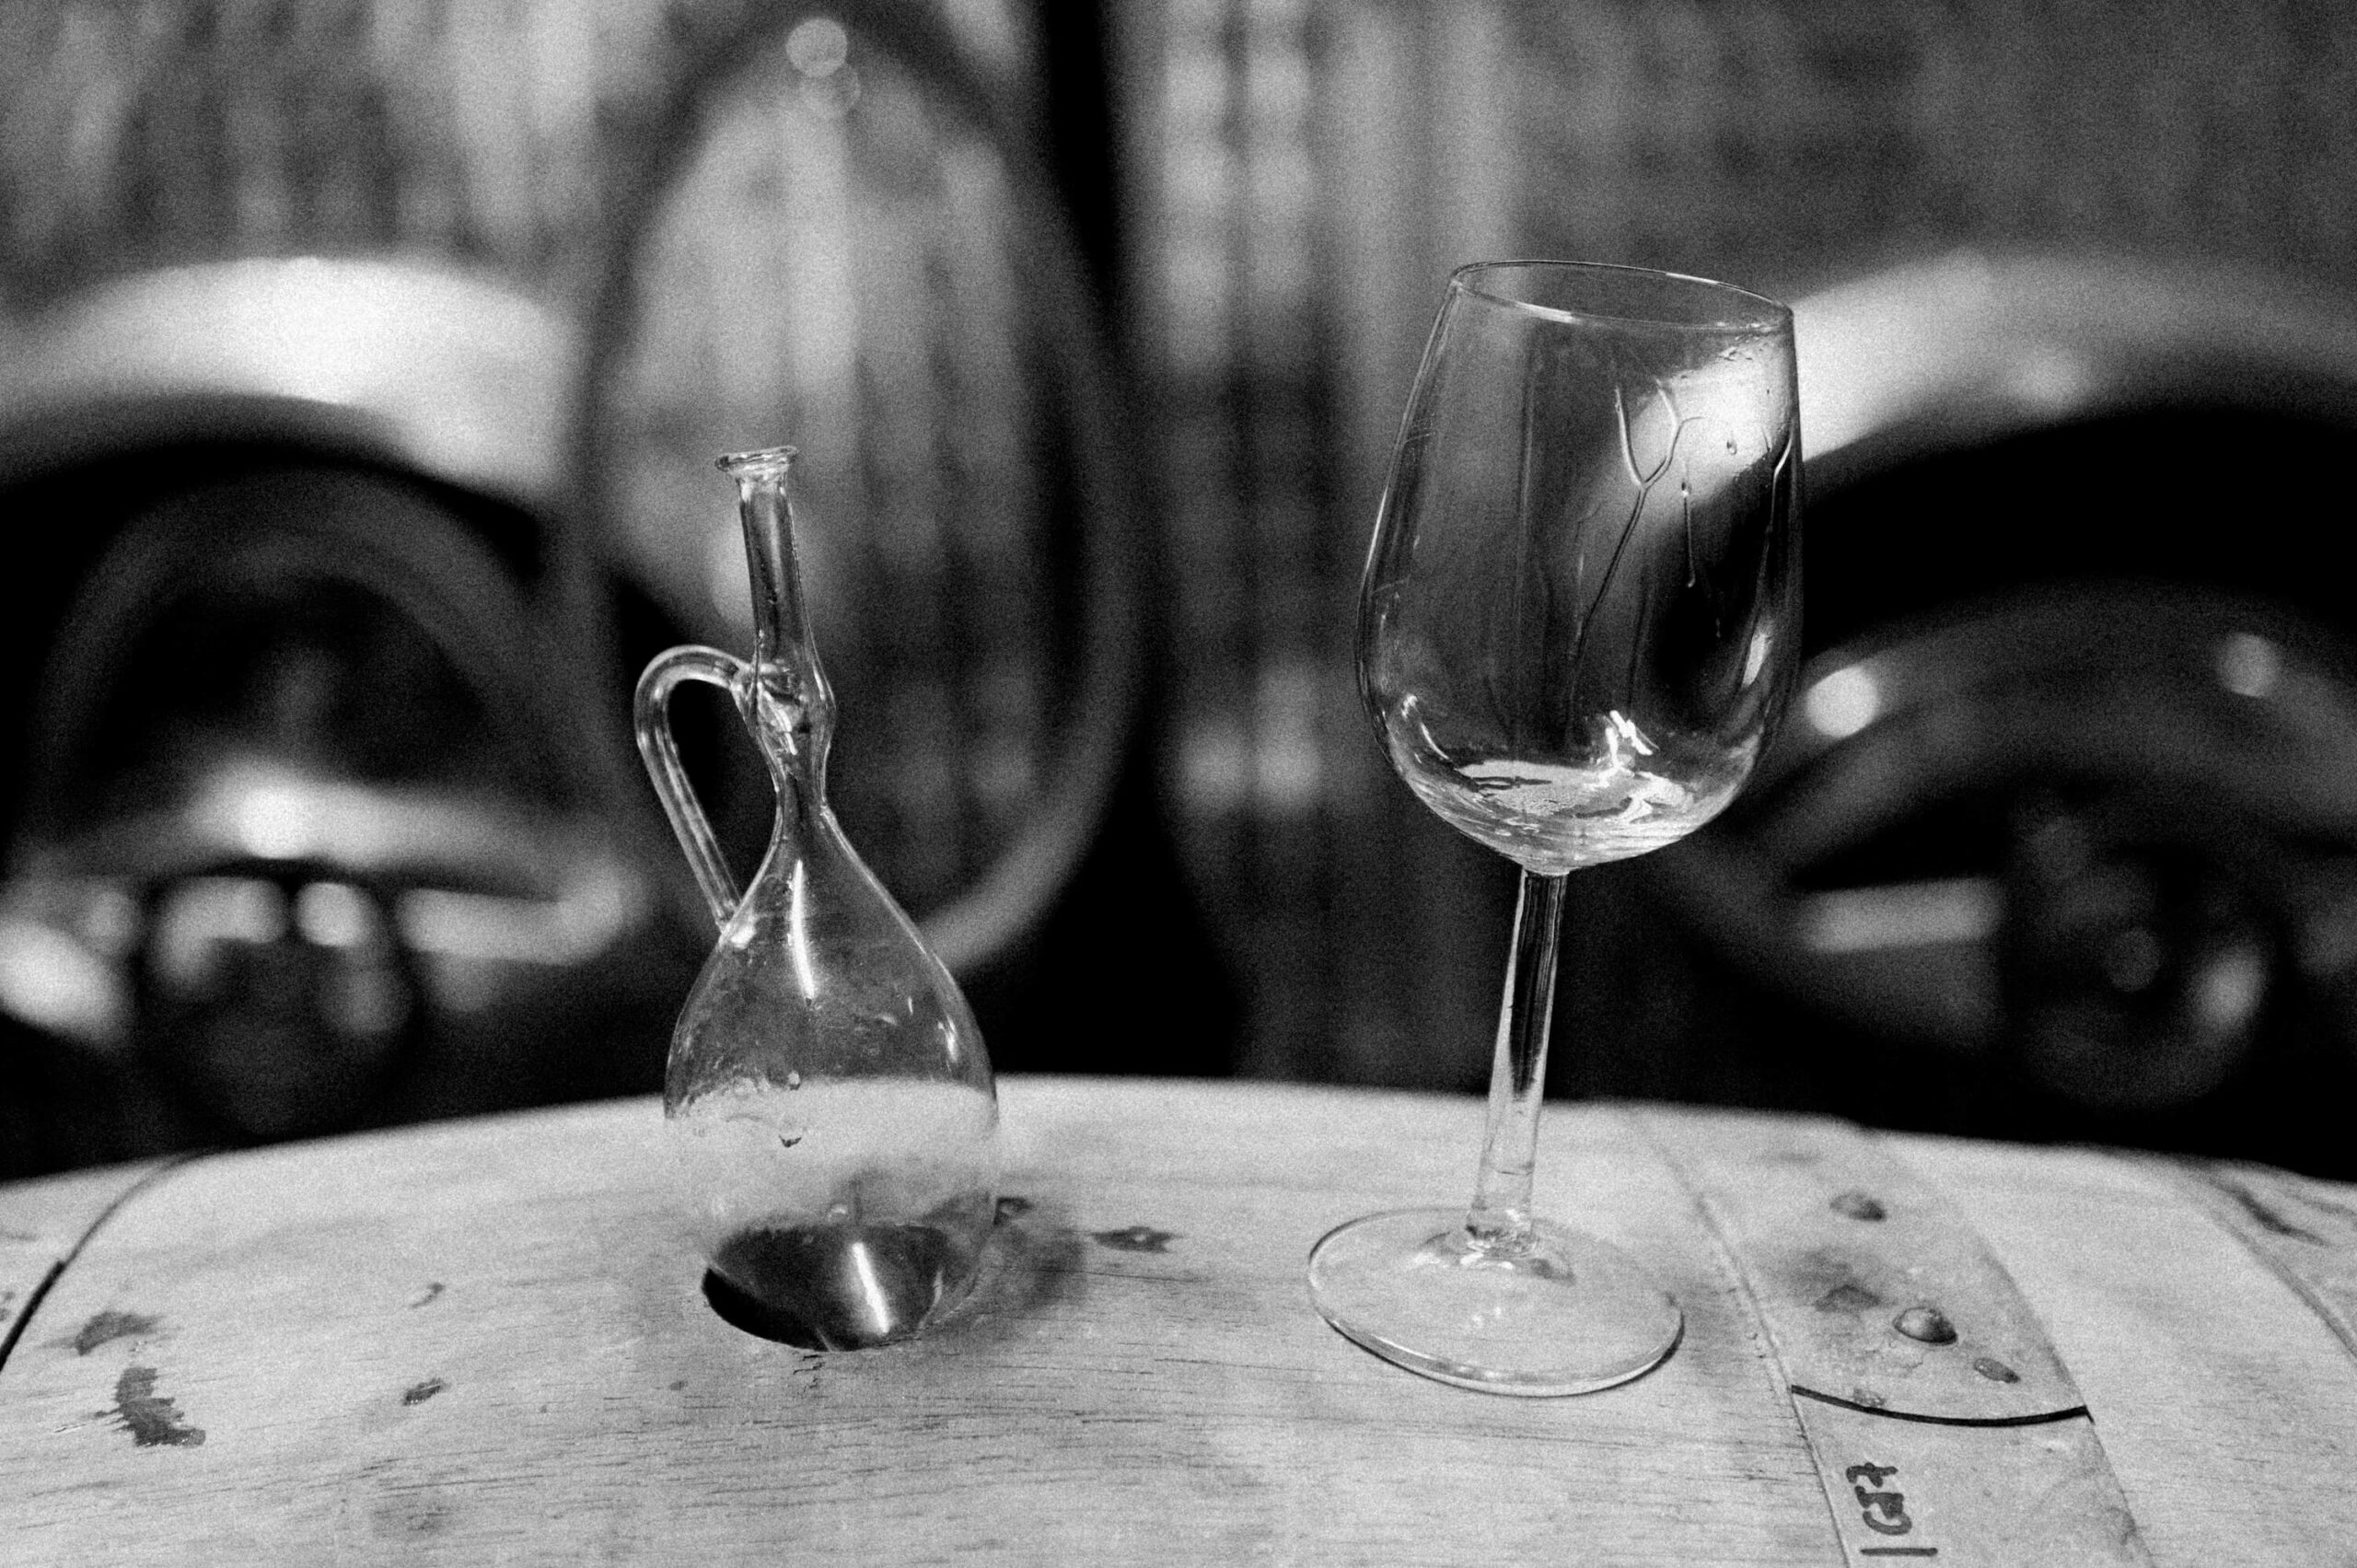 Weinglas auf einem Weinfass in schwarz weiß